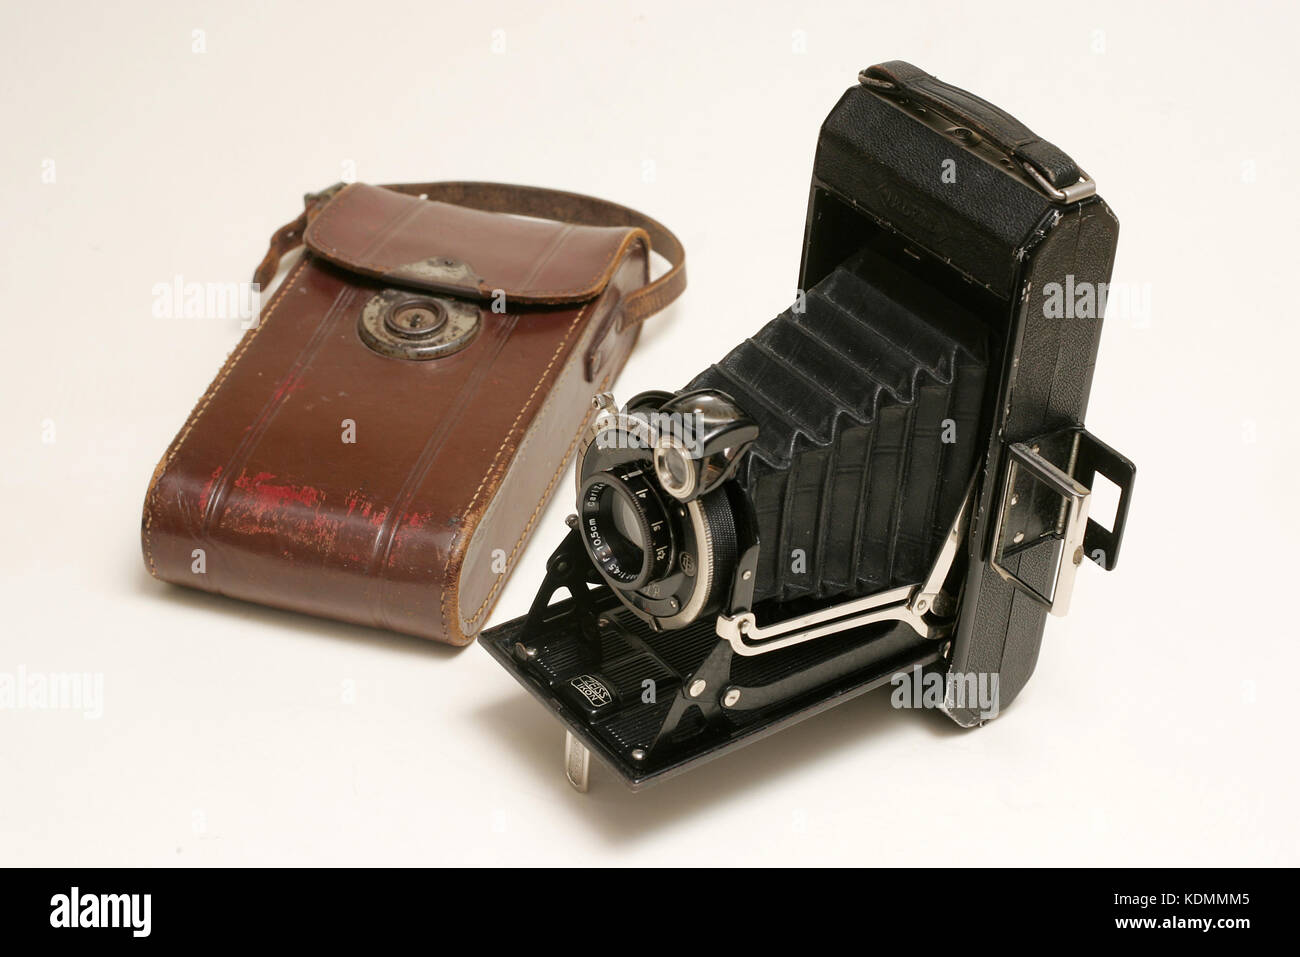 Zeiss Ikonta fotocamera di piegatura, 6cm x 9cm formato, con tan custodia in pelle Foto Stock